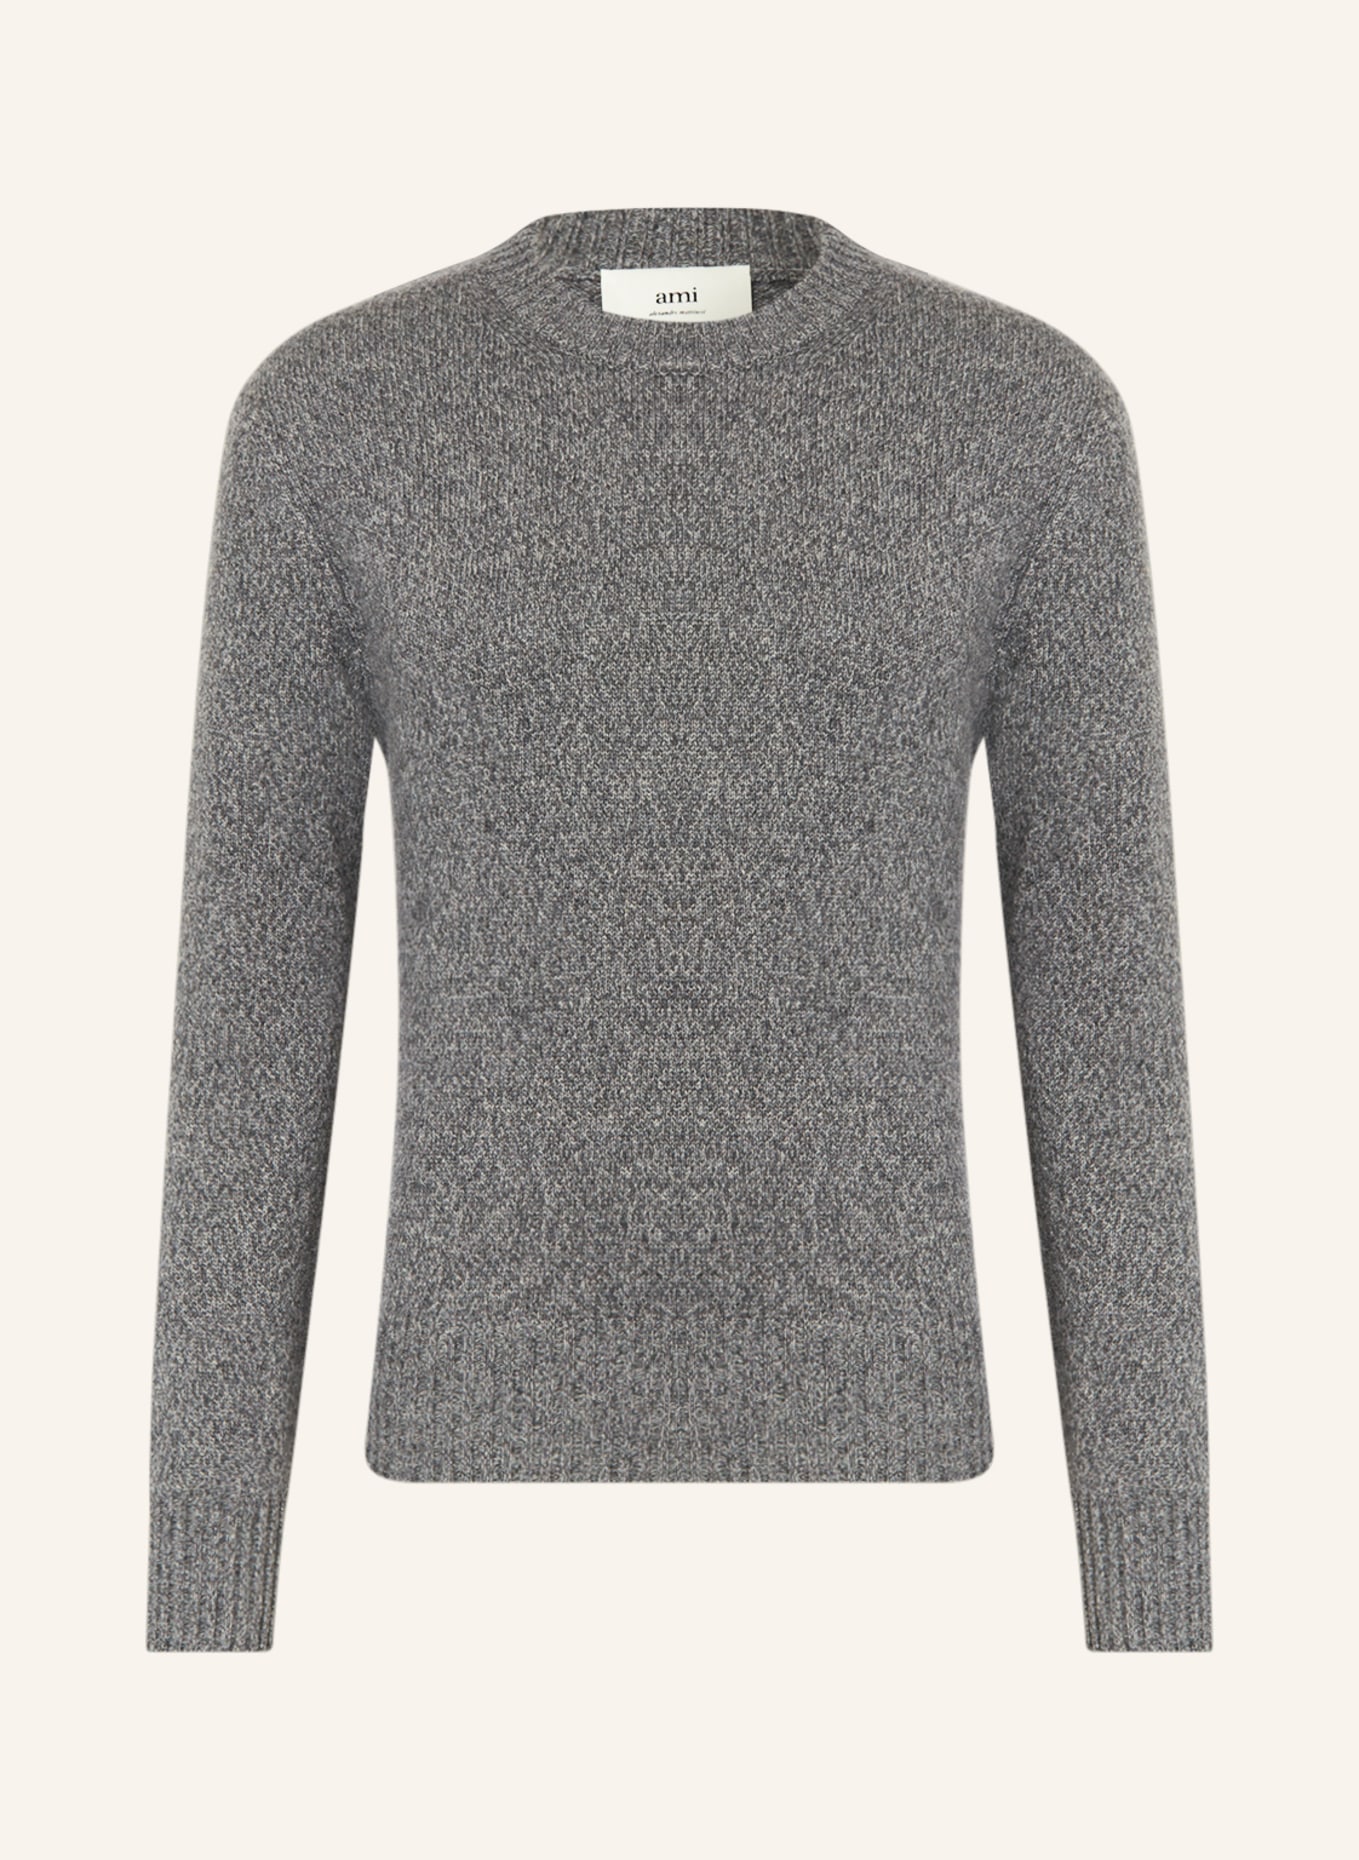 AMI PARIS Cashmere-Pullover, Farbe: GRAU (Bild 1)